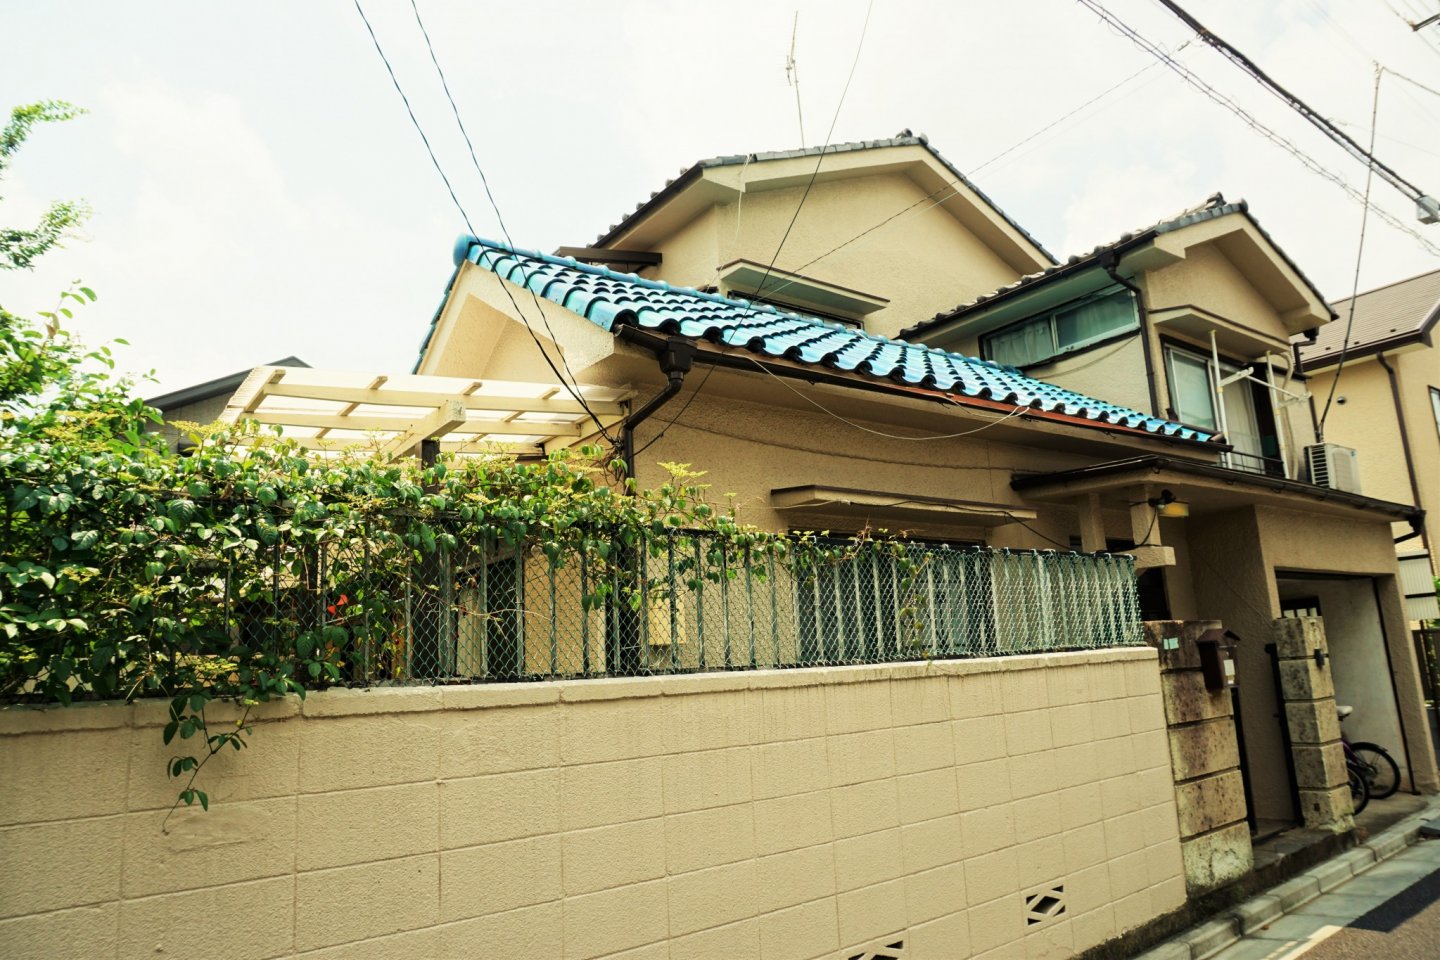 Genting atap biru Jepang yang terlihat sangat menonjol jika dibandingkan dengan bangunan-bangunan lain di area ini